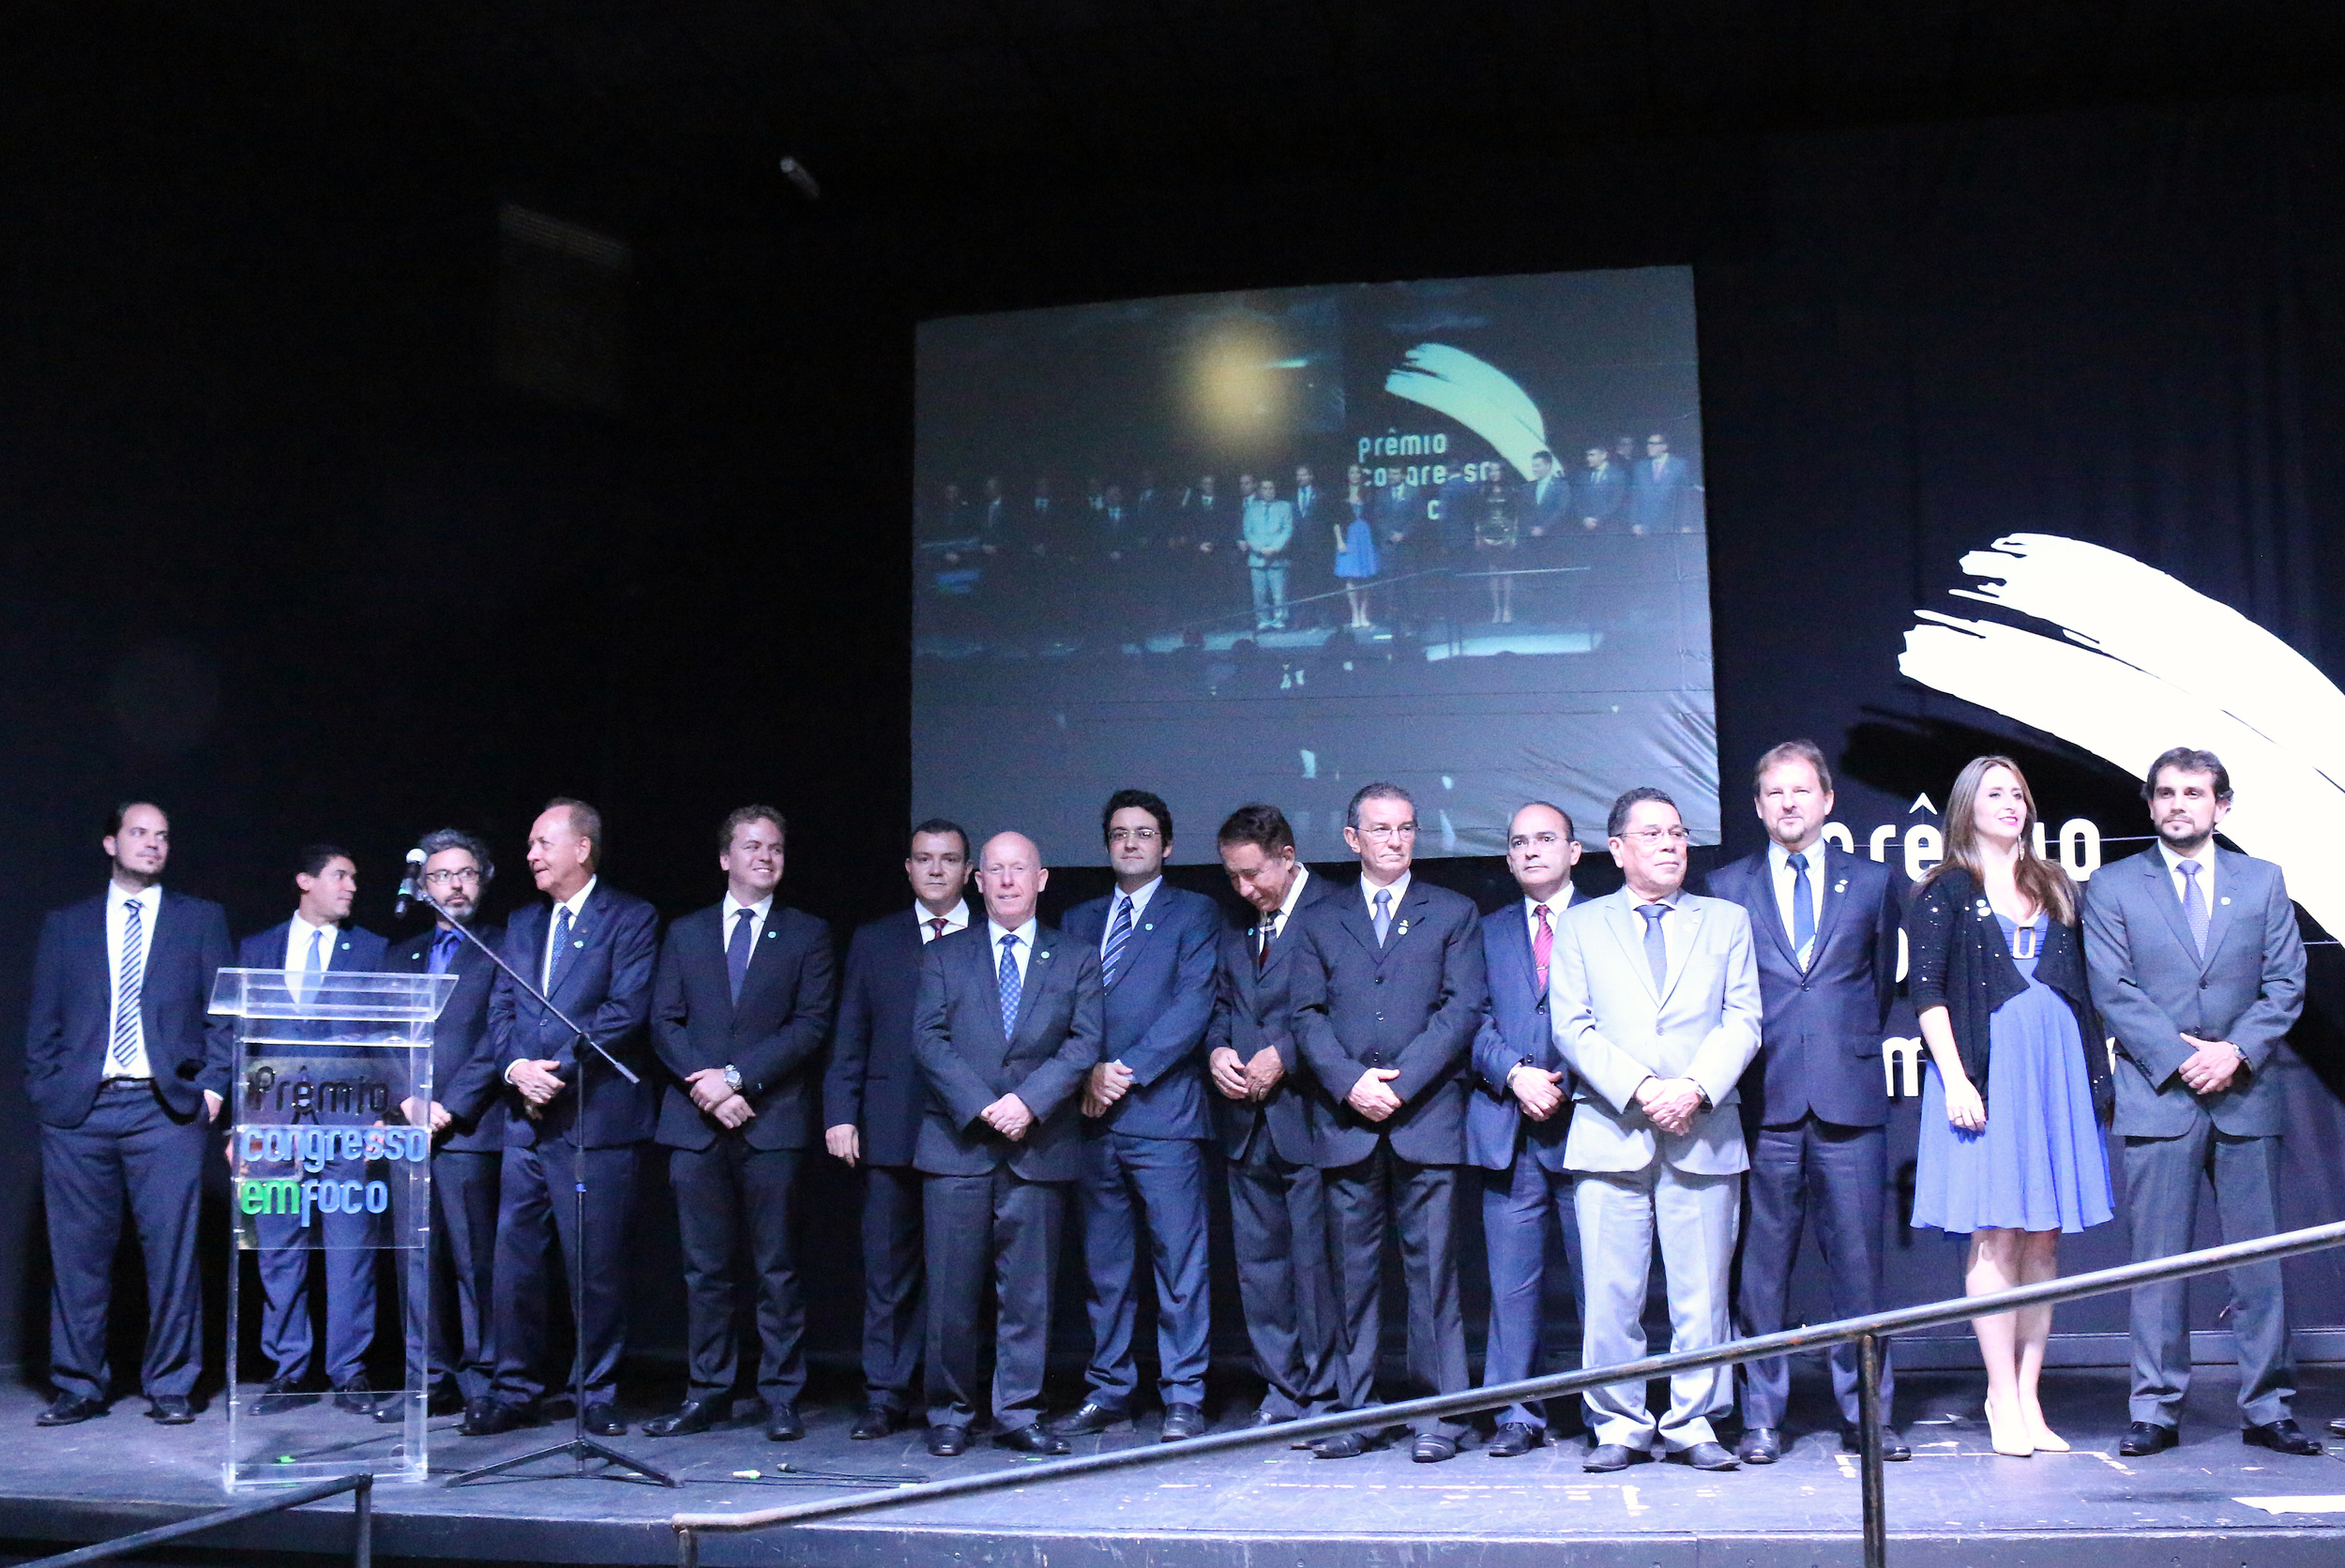 Patrocinadores e Apoiadores do Prêmio Congresso em Foco 2015